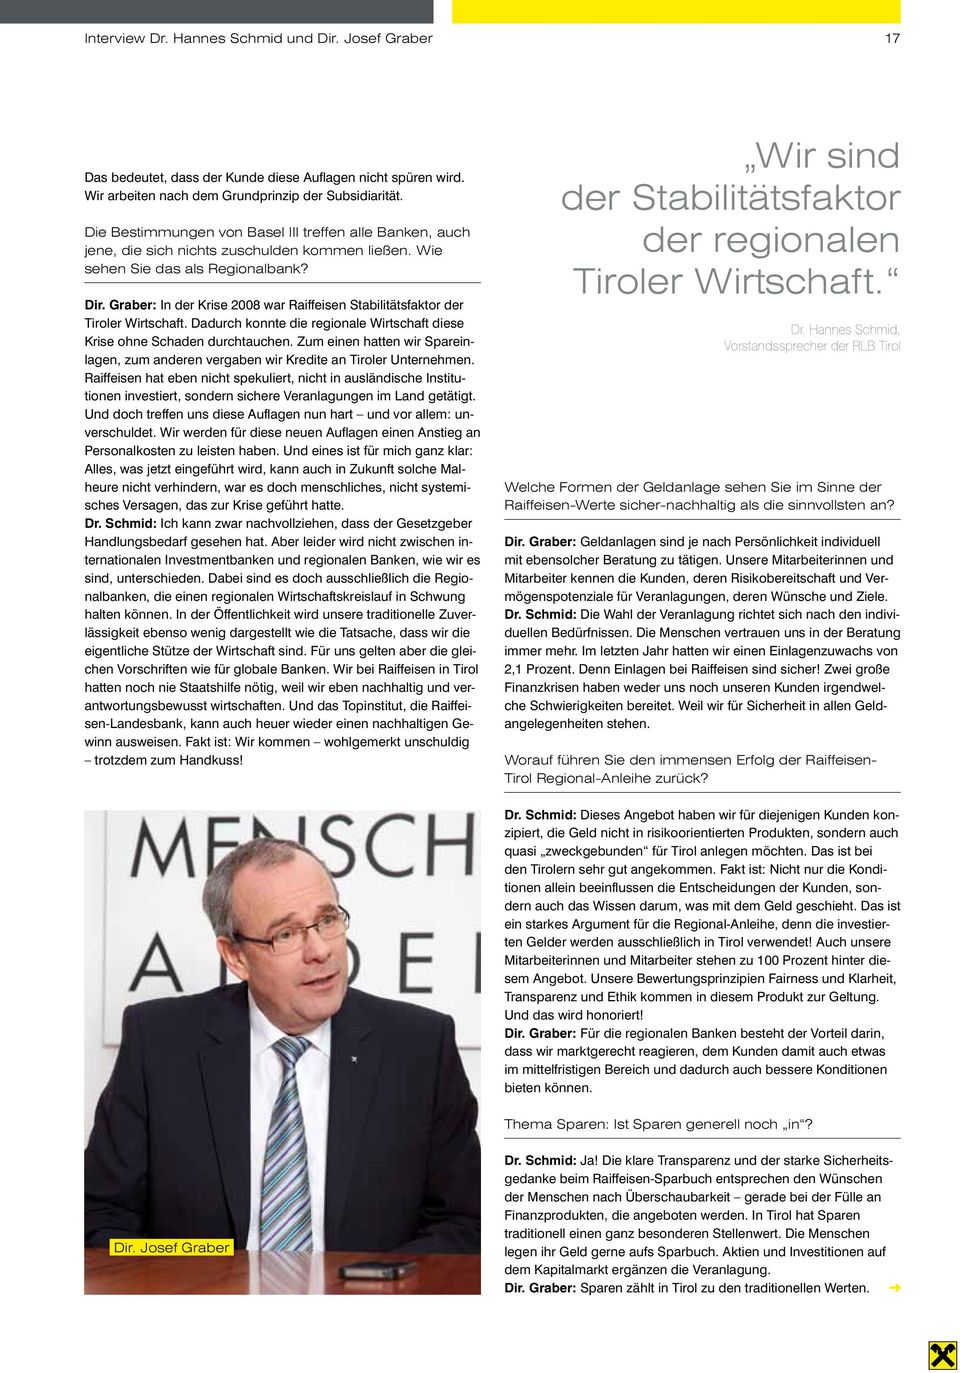 Graber: In der Krise 2008 war Raiffeisen Stabilitätsfaktor der Tiroler Wirtschaft. Dadurch konnte die regionale Wirtschaft diese Krise ohne Schaden durchtauchen.